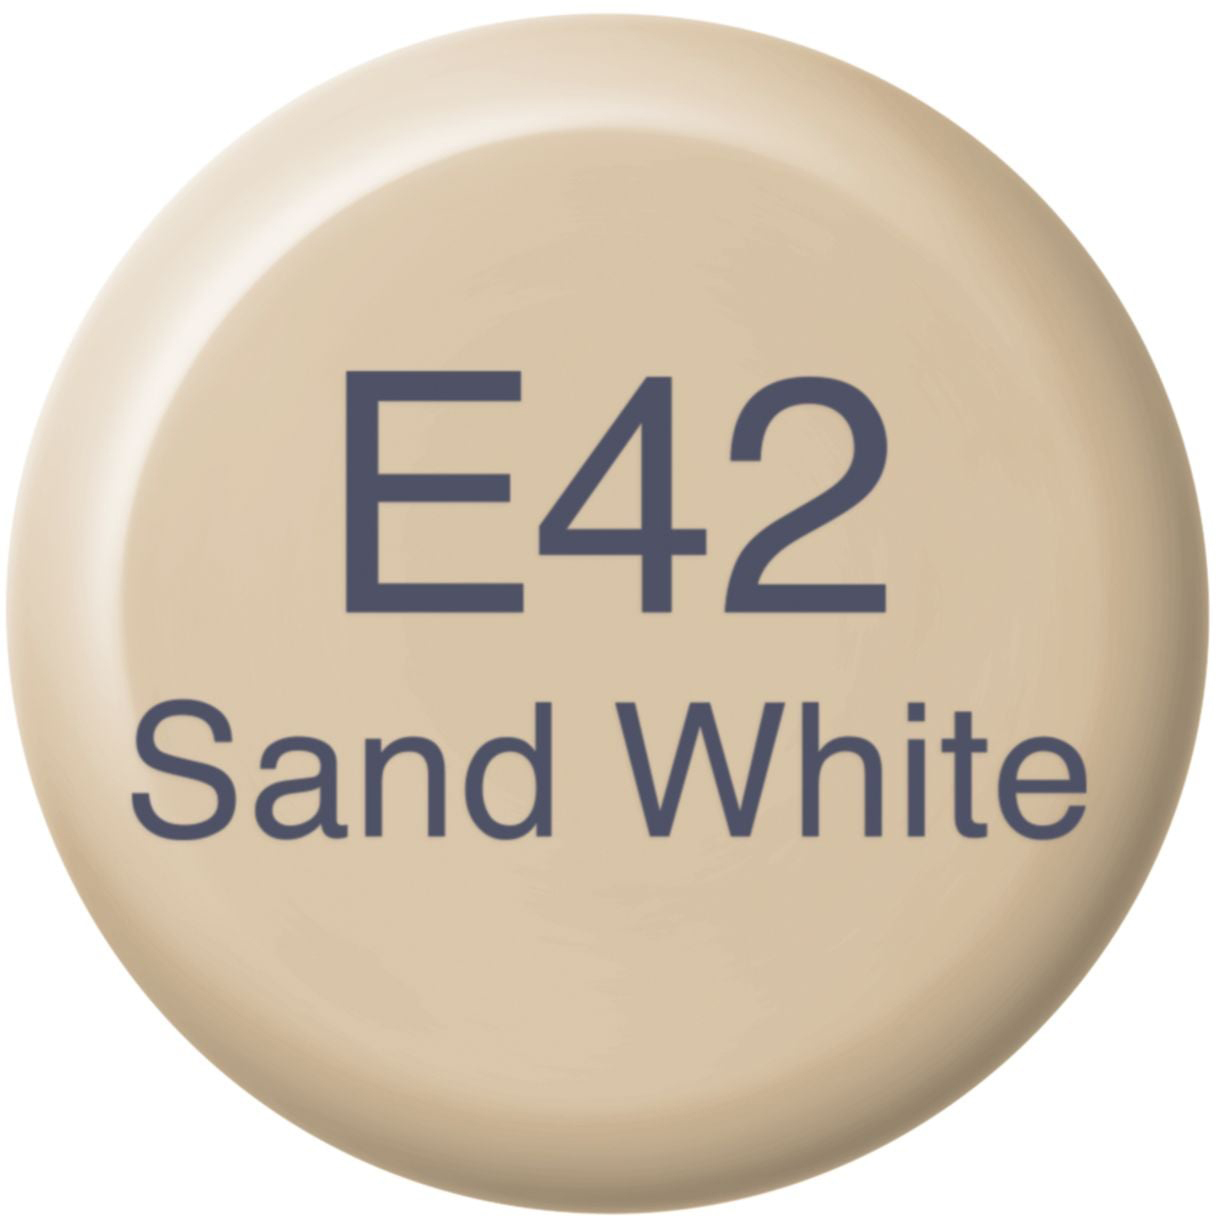 COPIC Ink Refill 21076329 E42 - Sand White